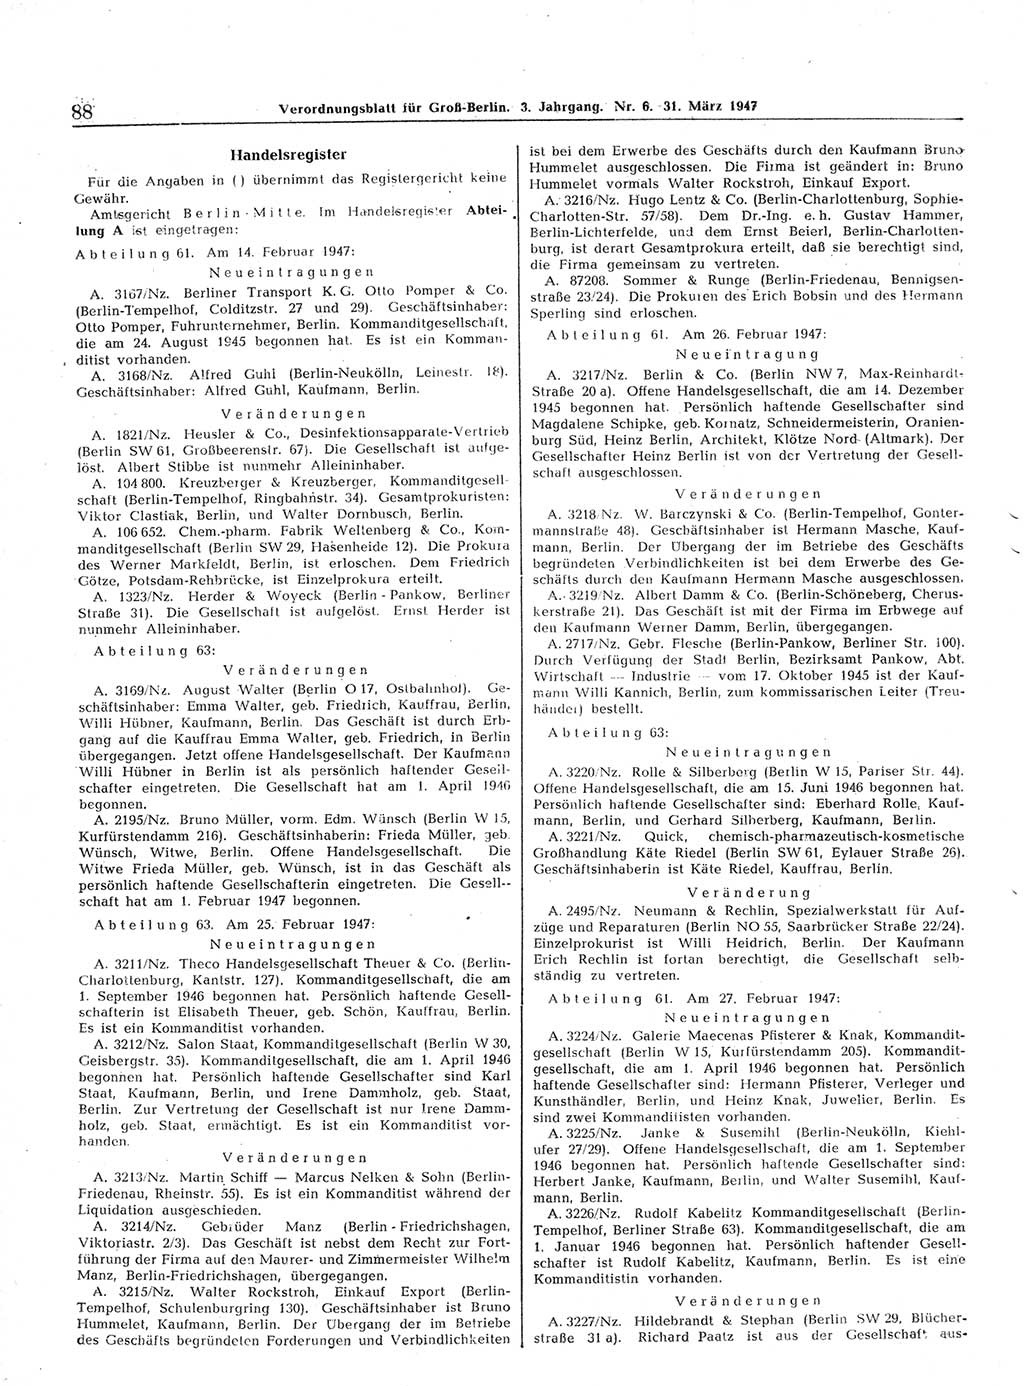 Verordnungsblatt (VOBl.) für Groß-Berlin 1947, Seite 88 (VOBl. Bln. 1947, S. 88)